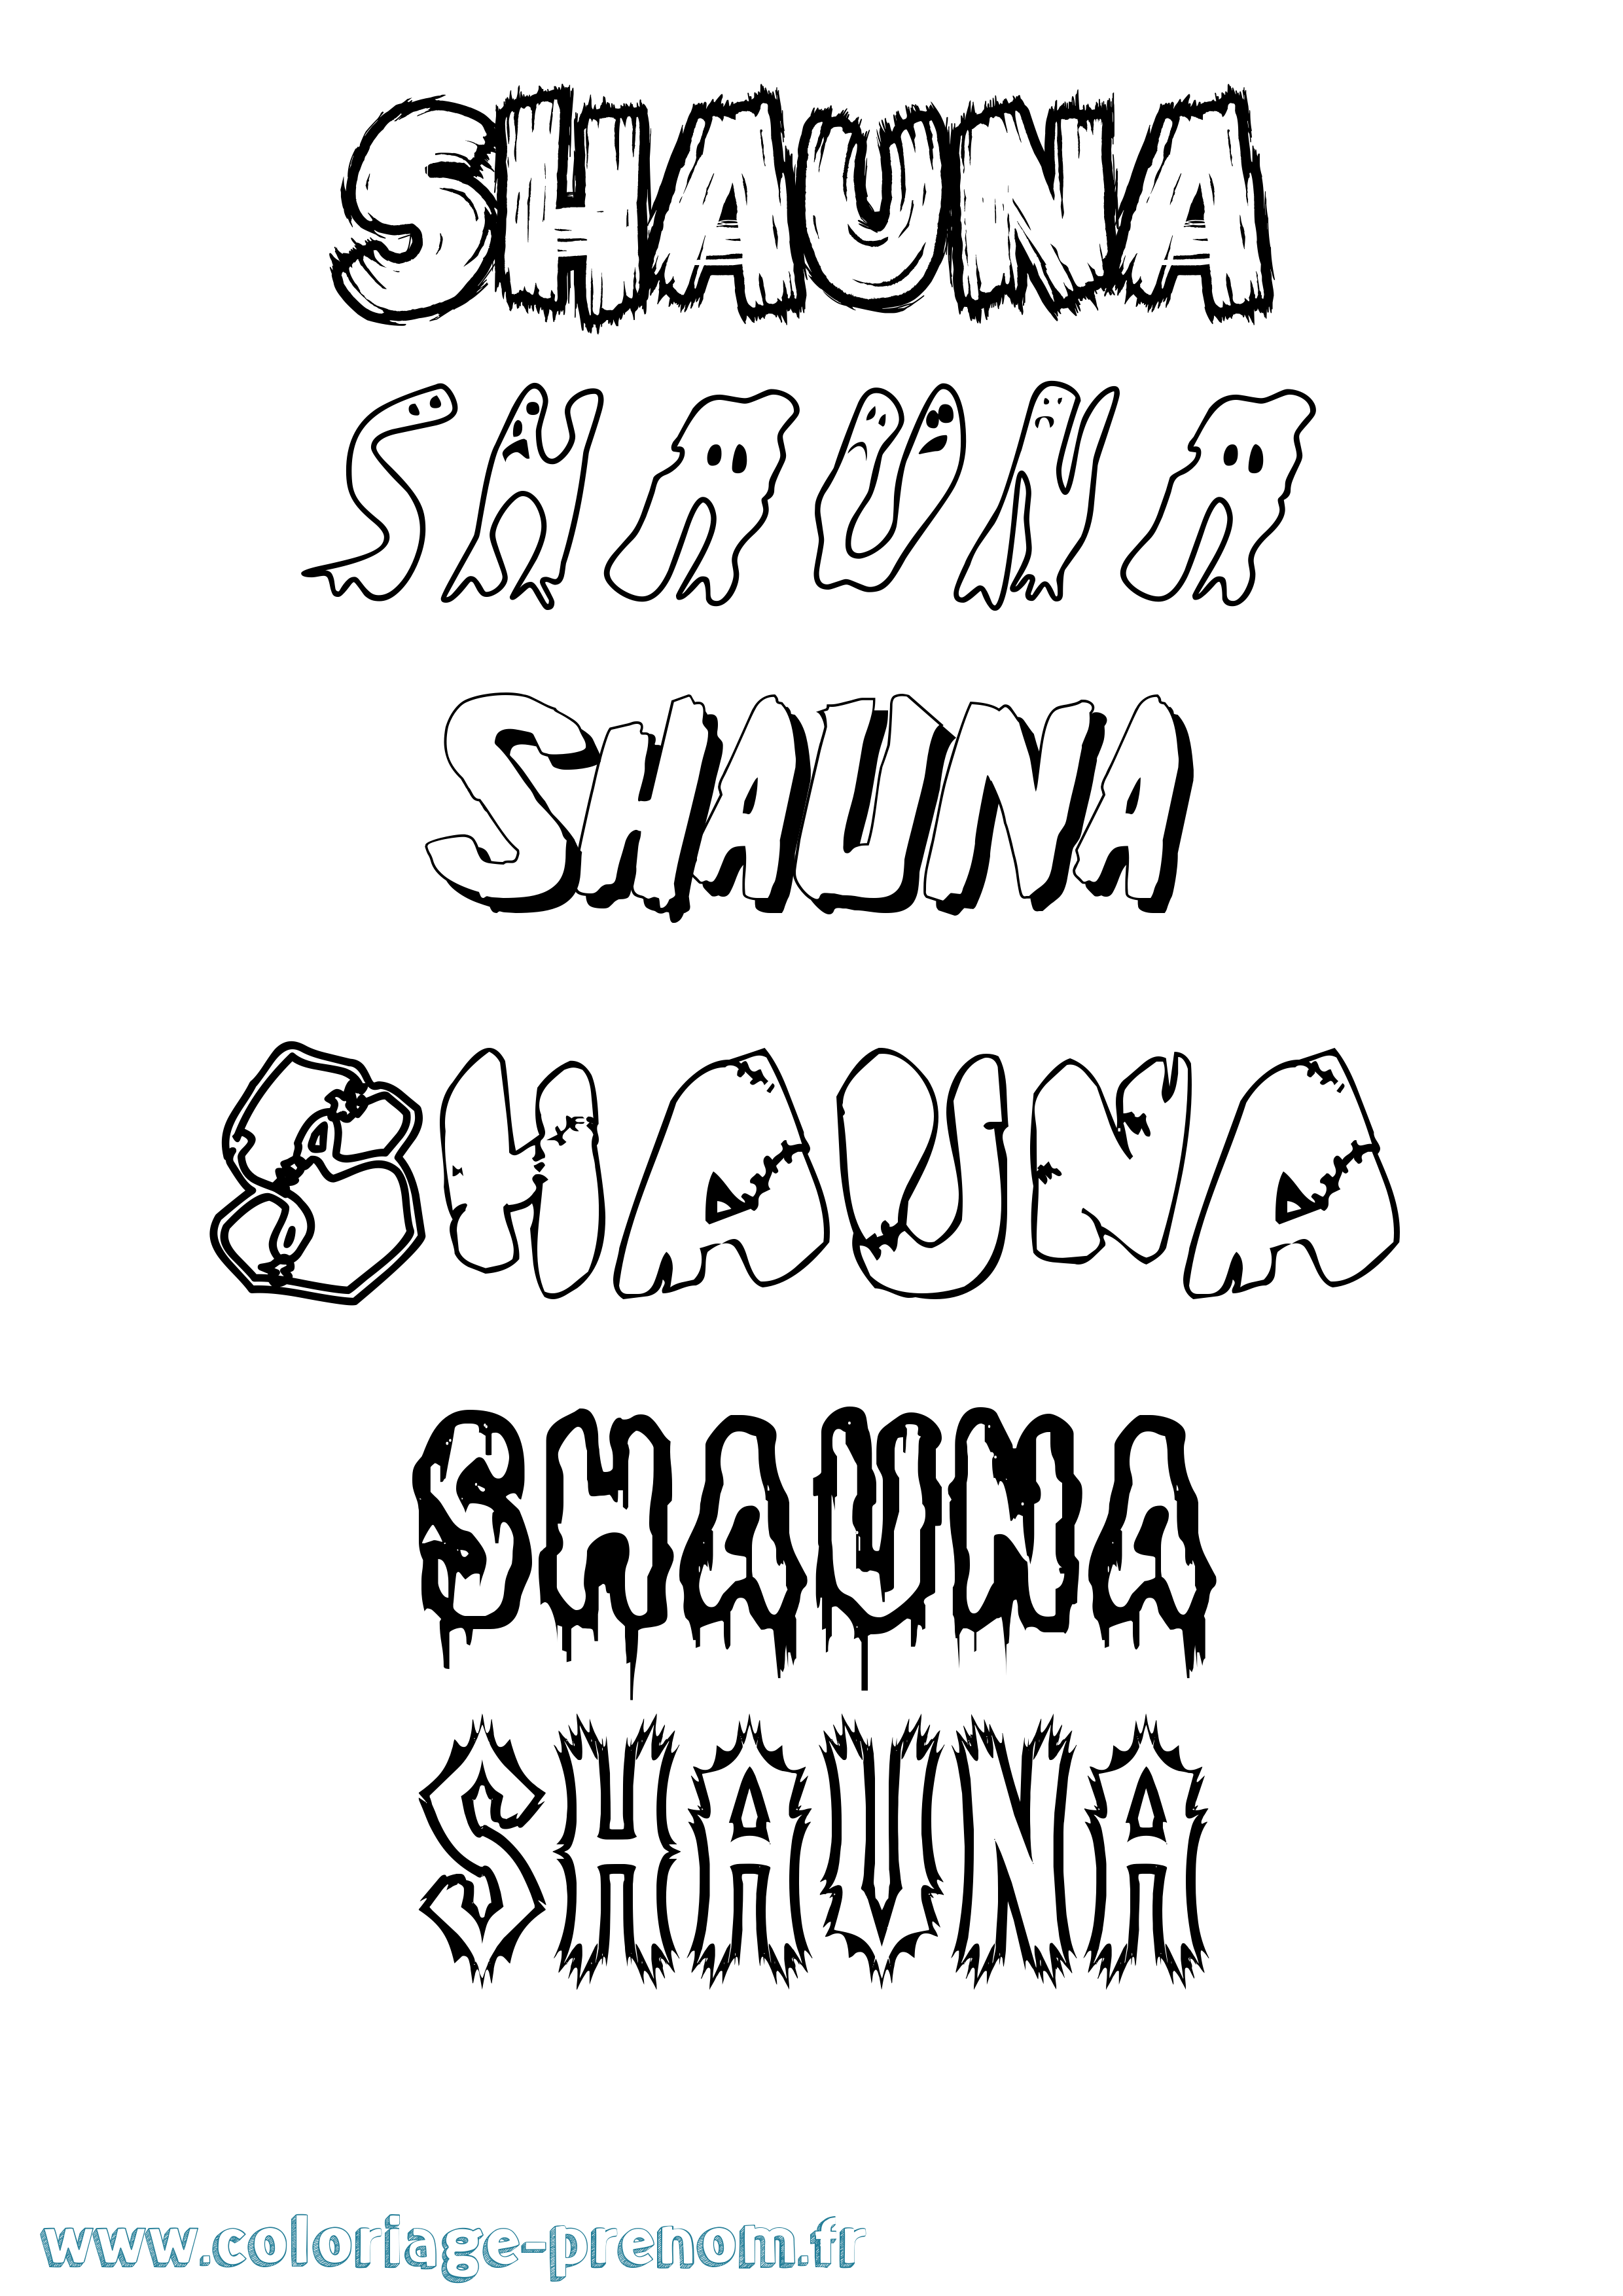 Coloriage prénom Shauna Frisson